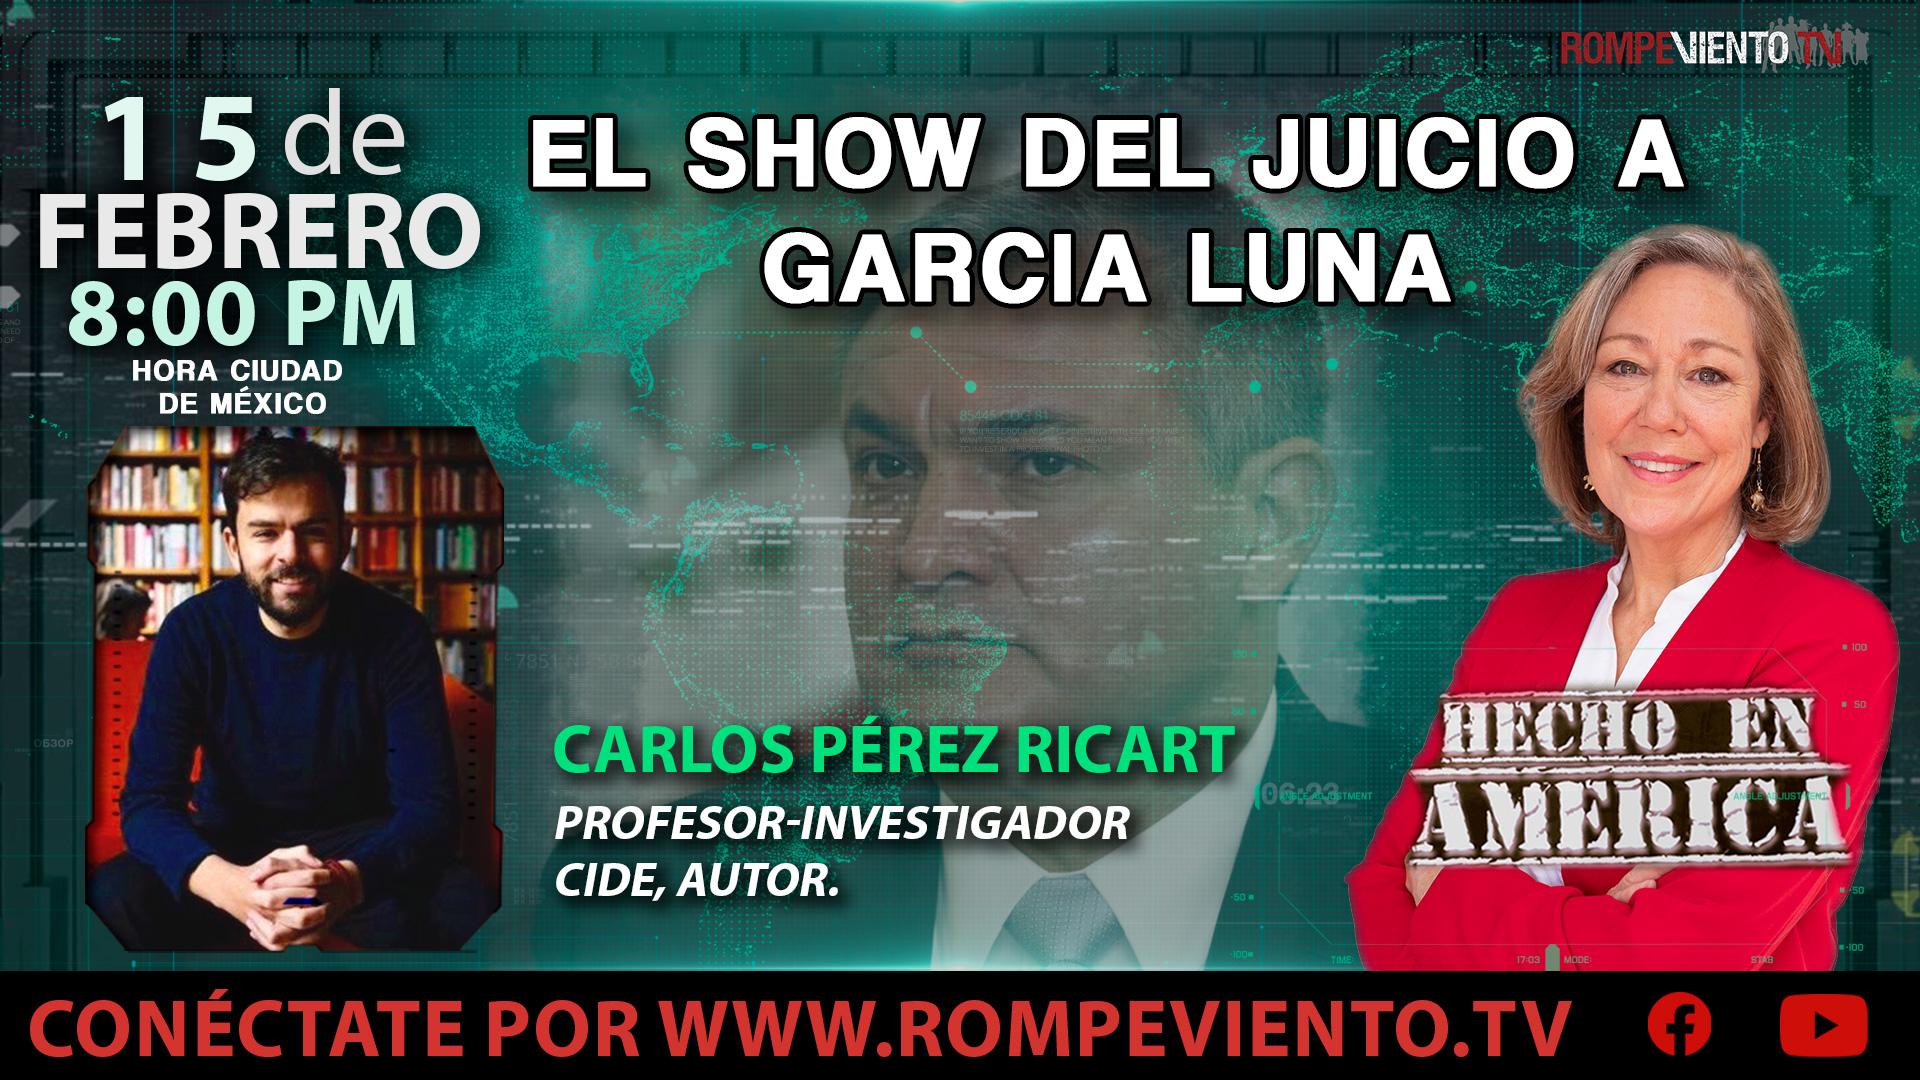 El show del juicio a Garcia Luna - Hecho en América